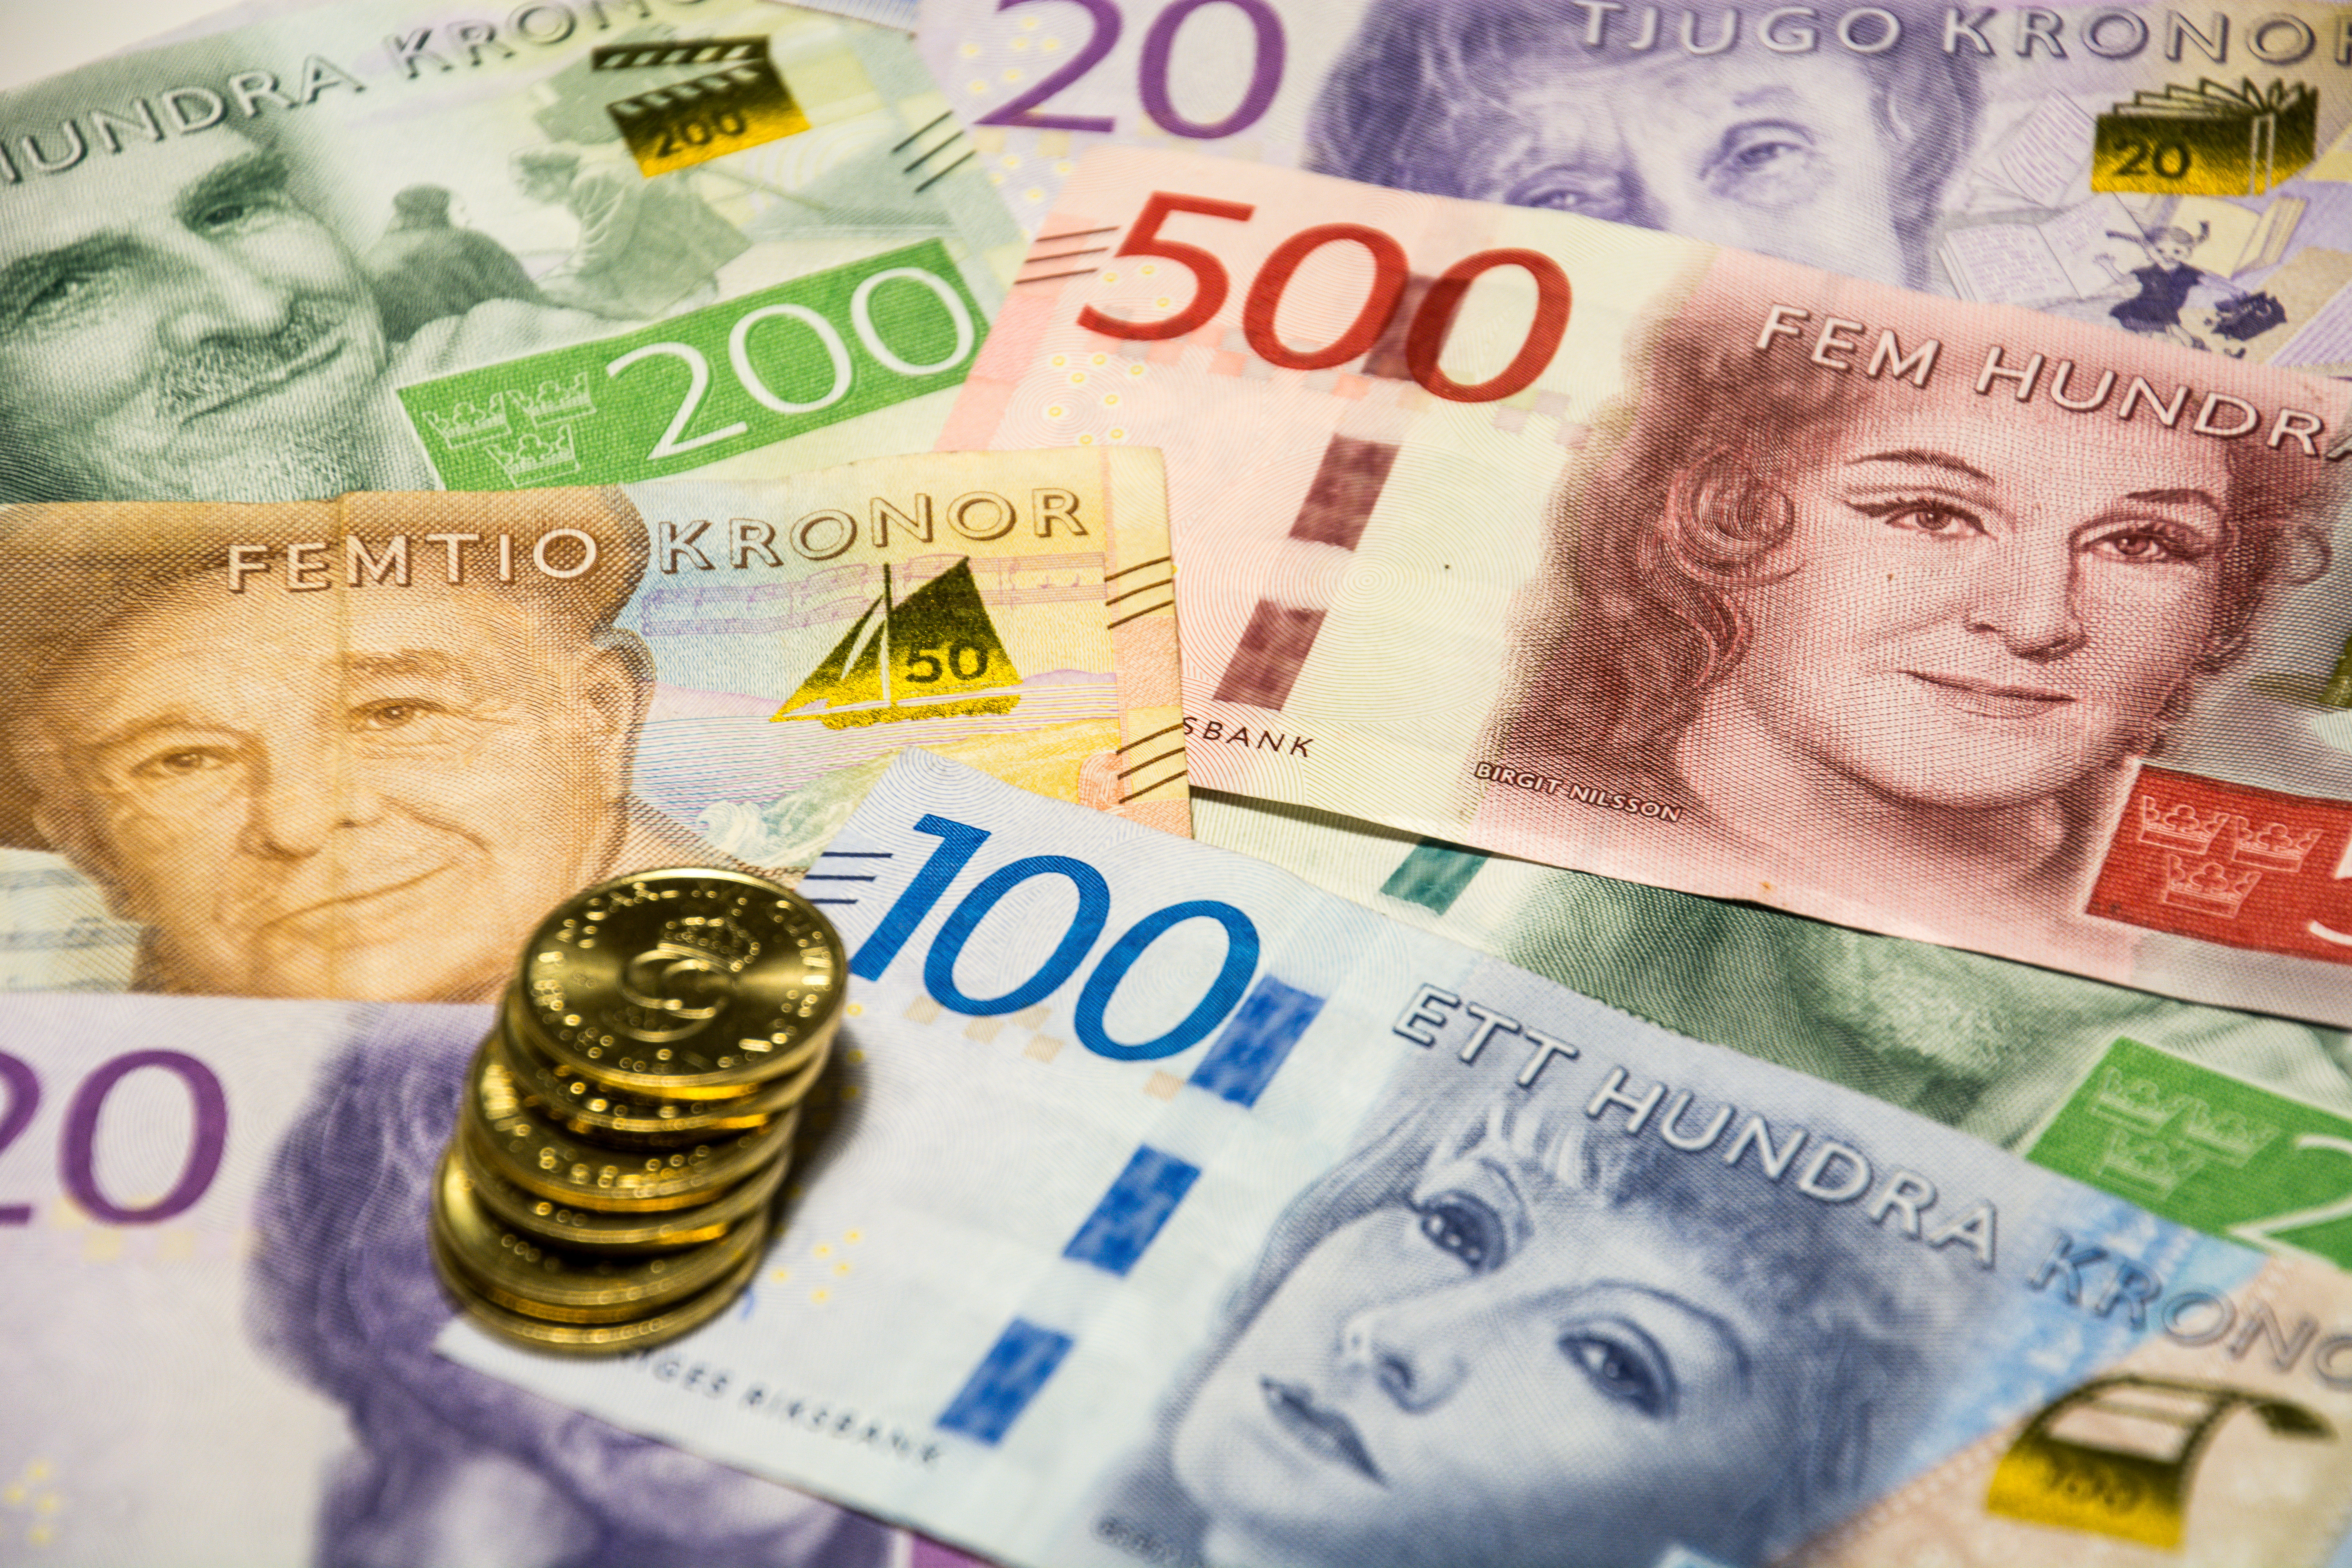 Svenska sedlar och mynt i olika valörer. 